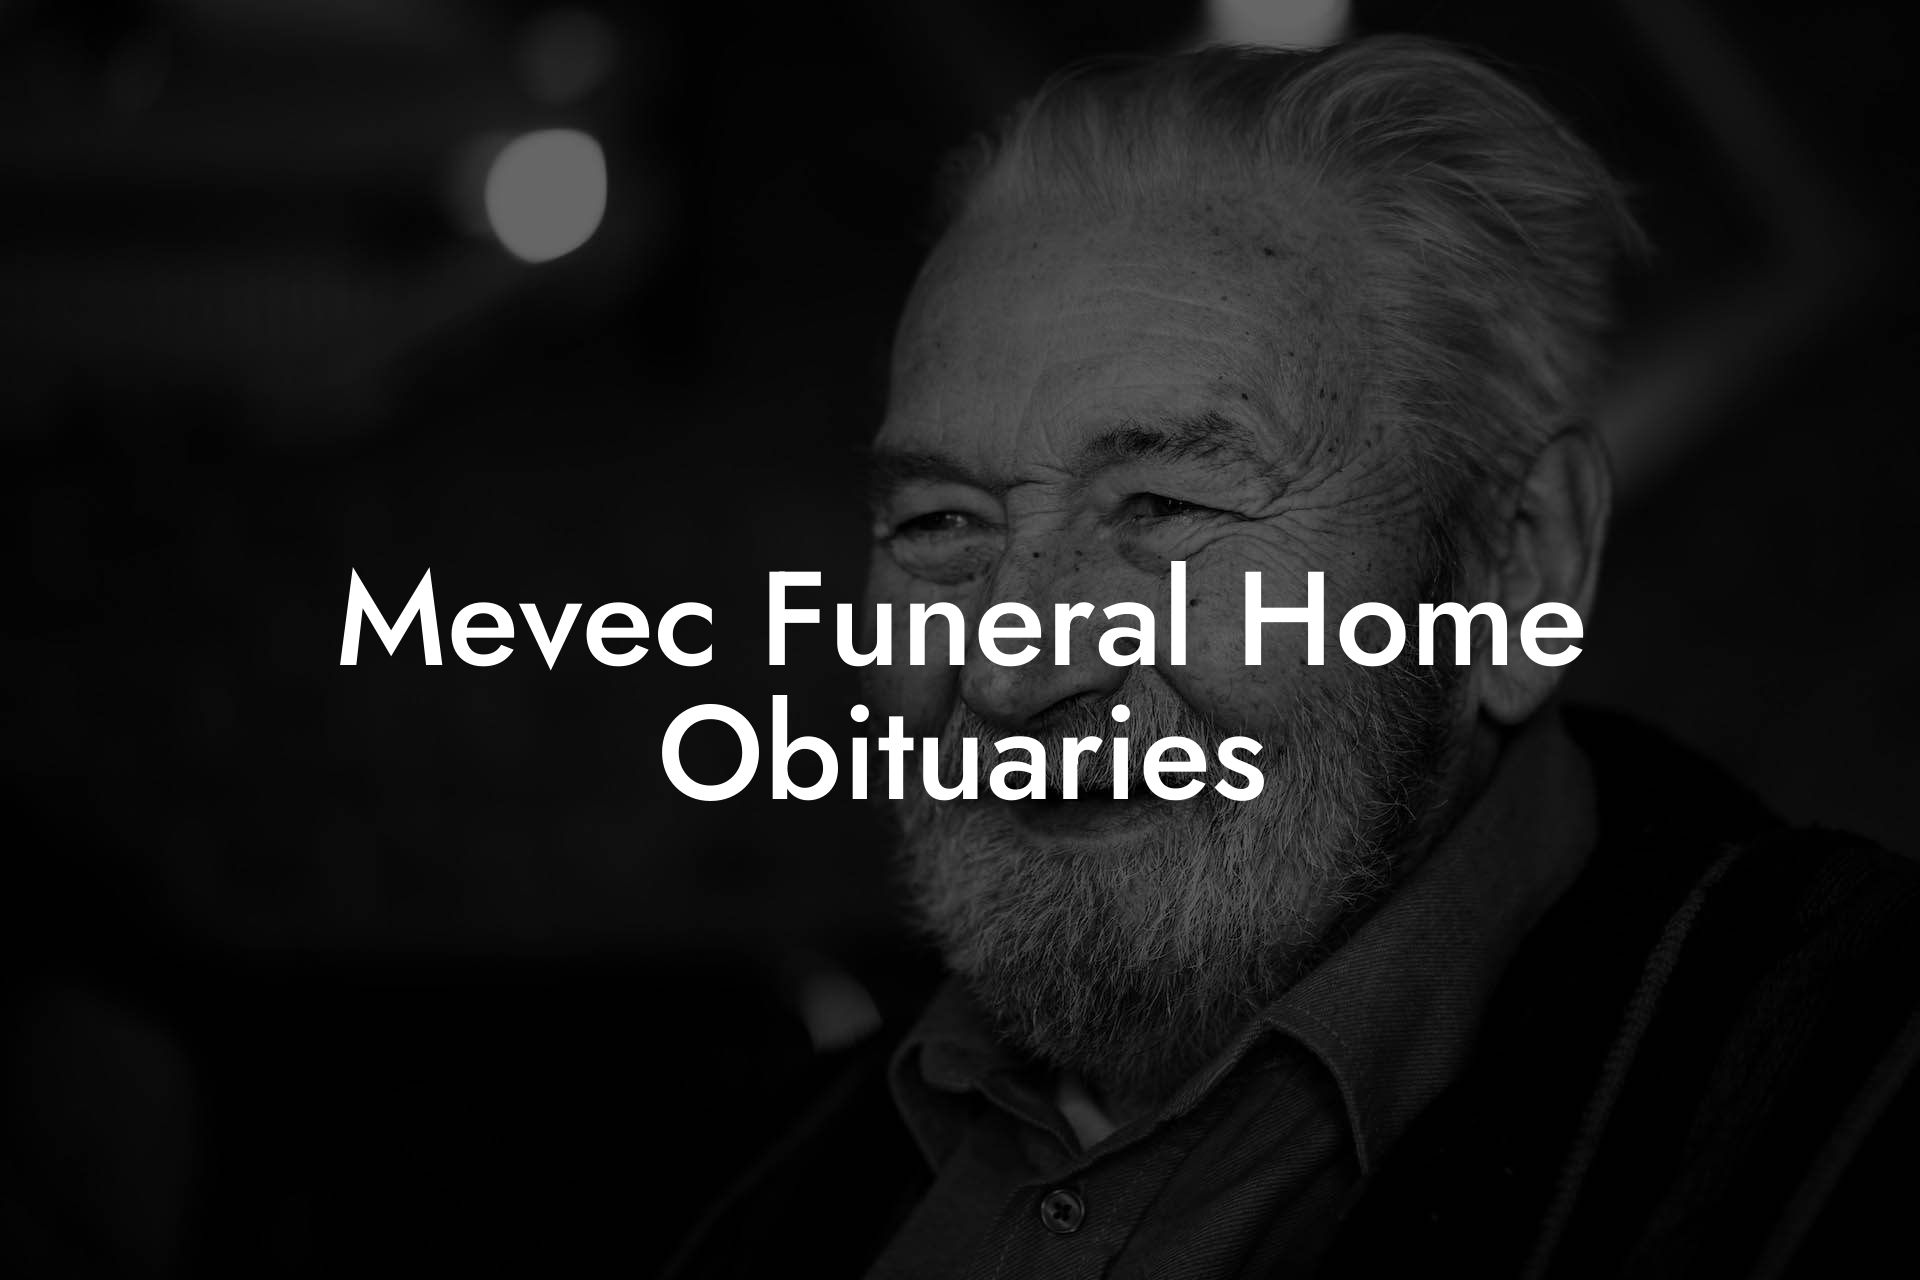 Mevec Funeral Home Obituaries